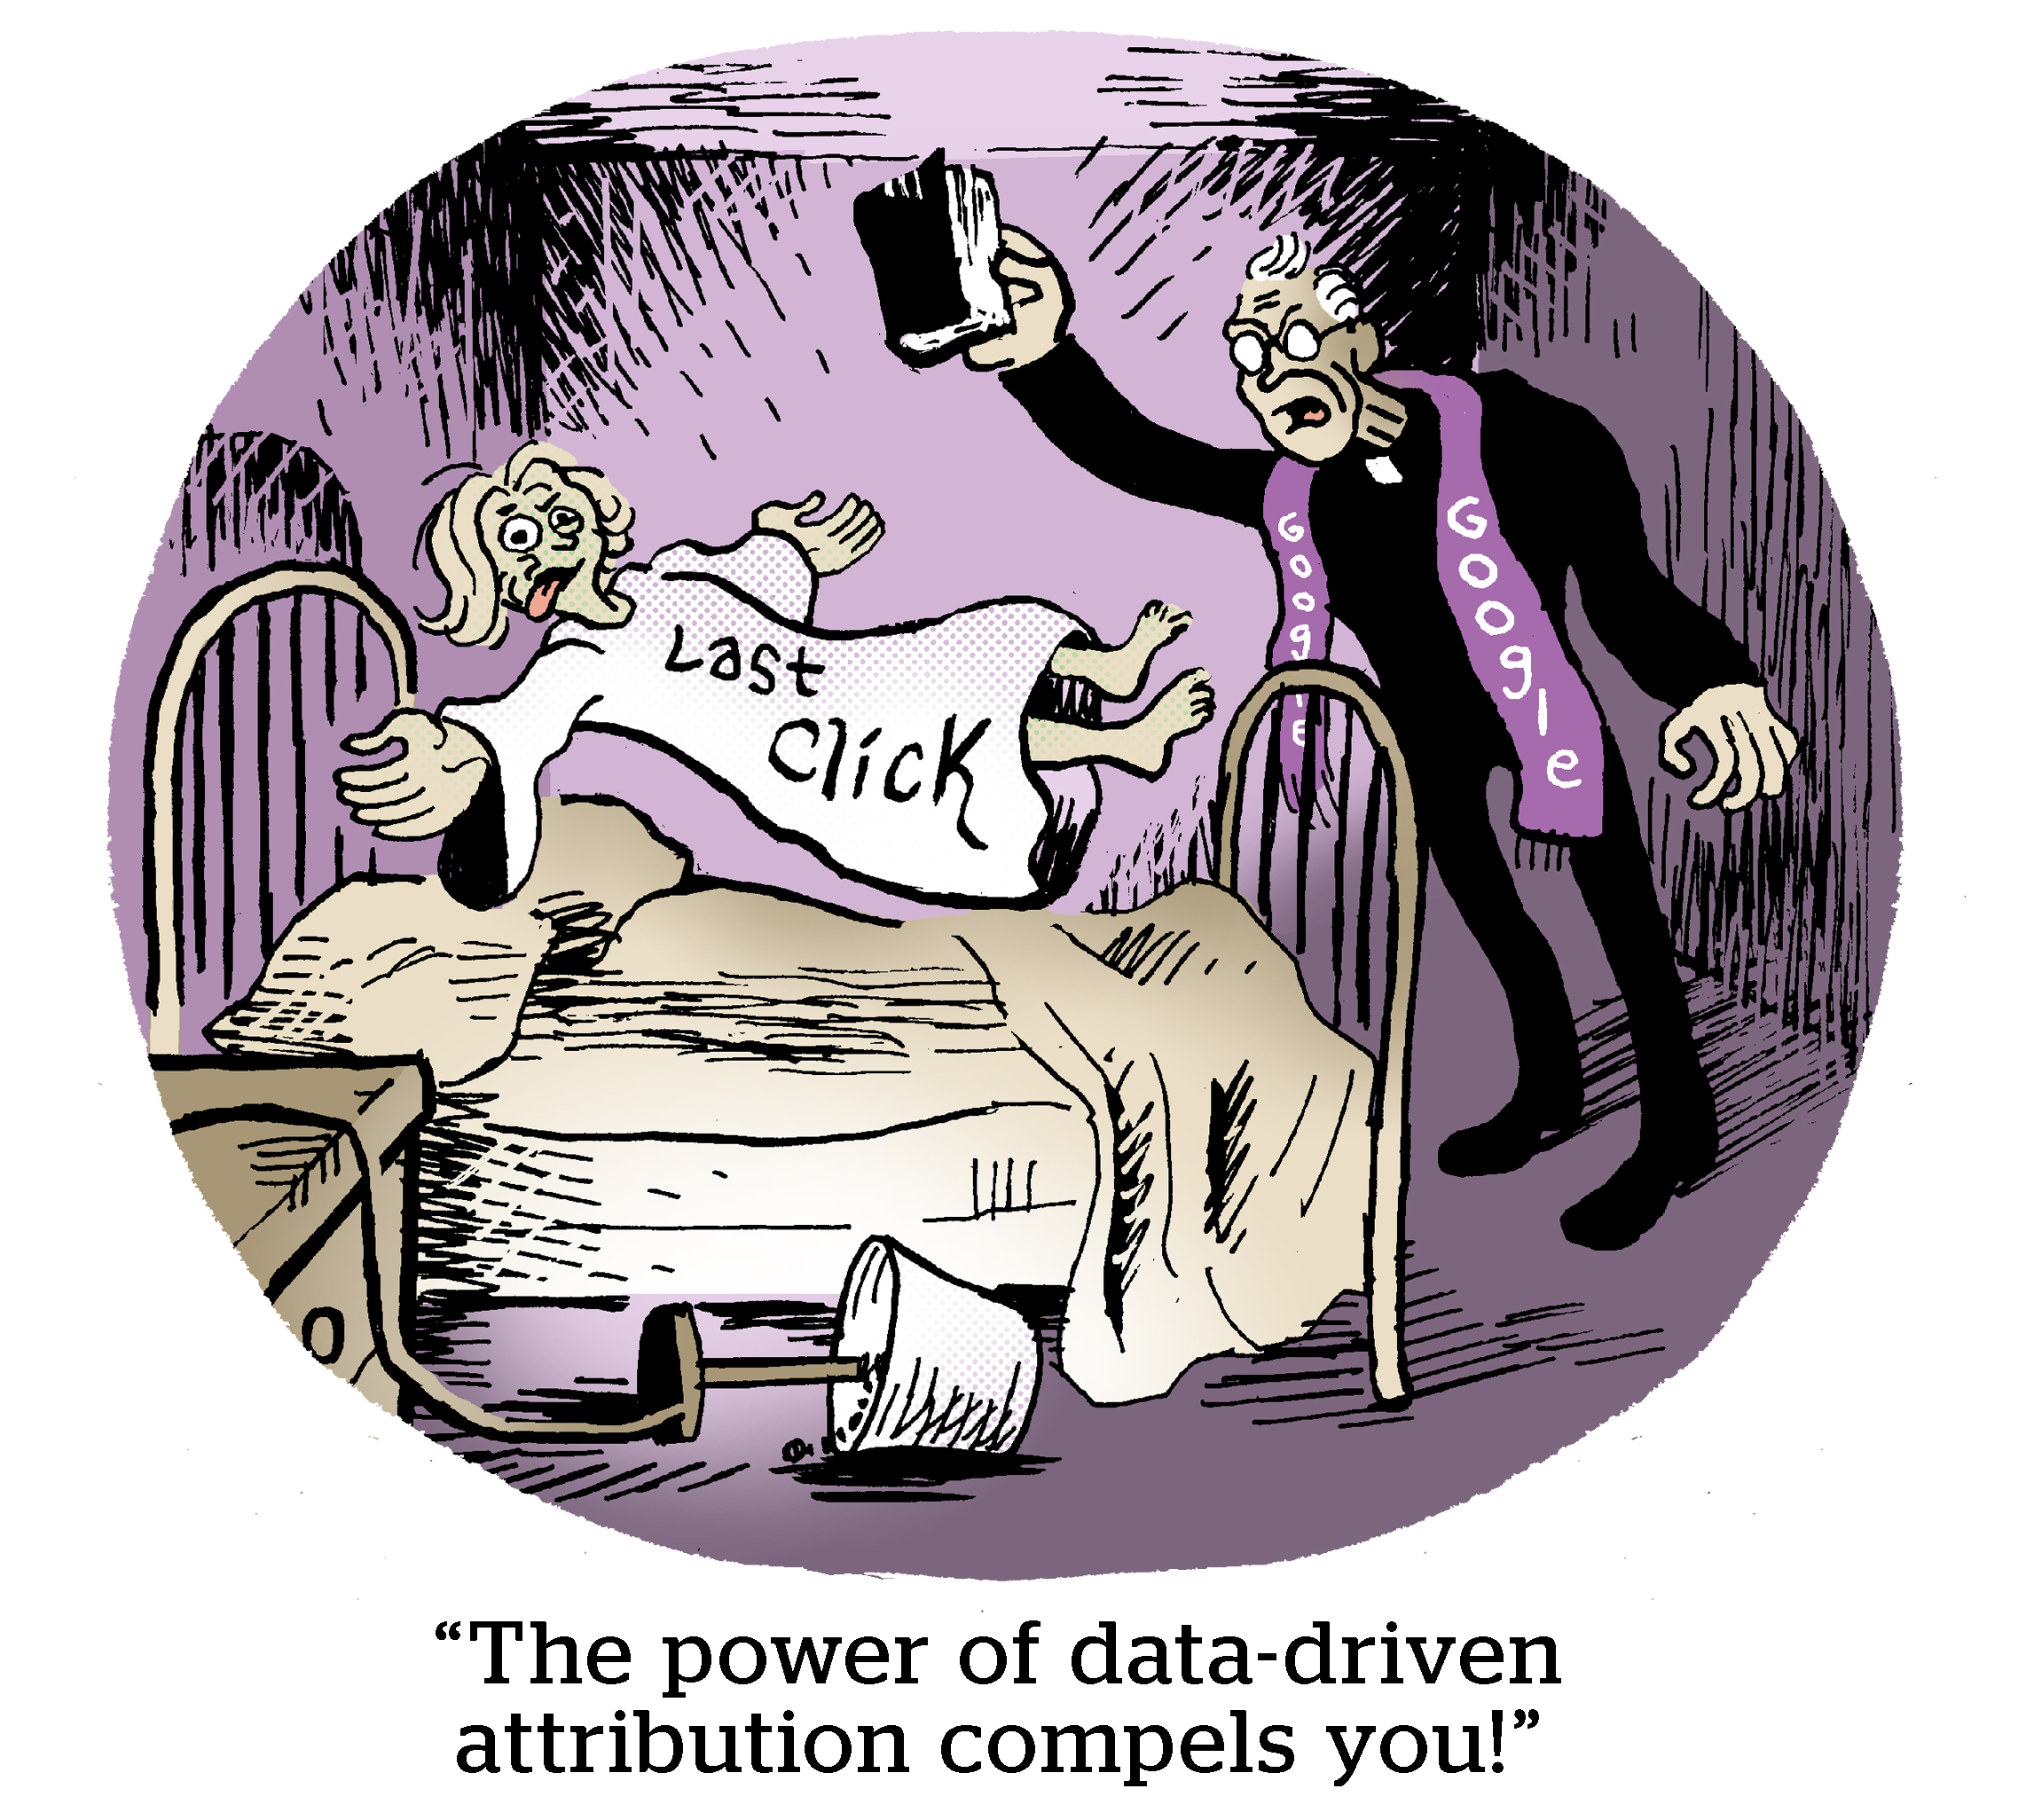 漫画：“数据驱动归因的力量迫使您！”